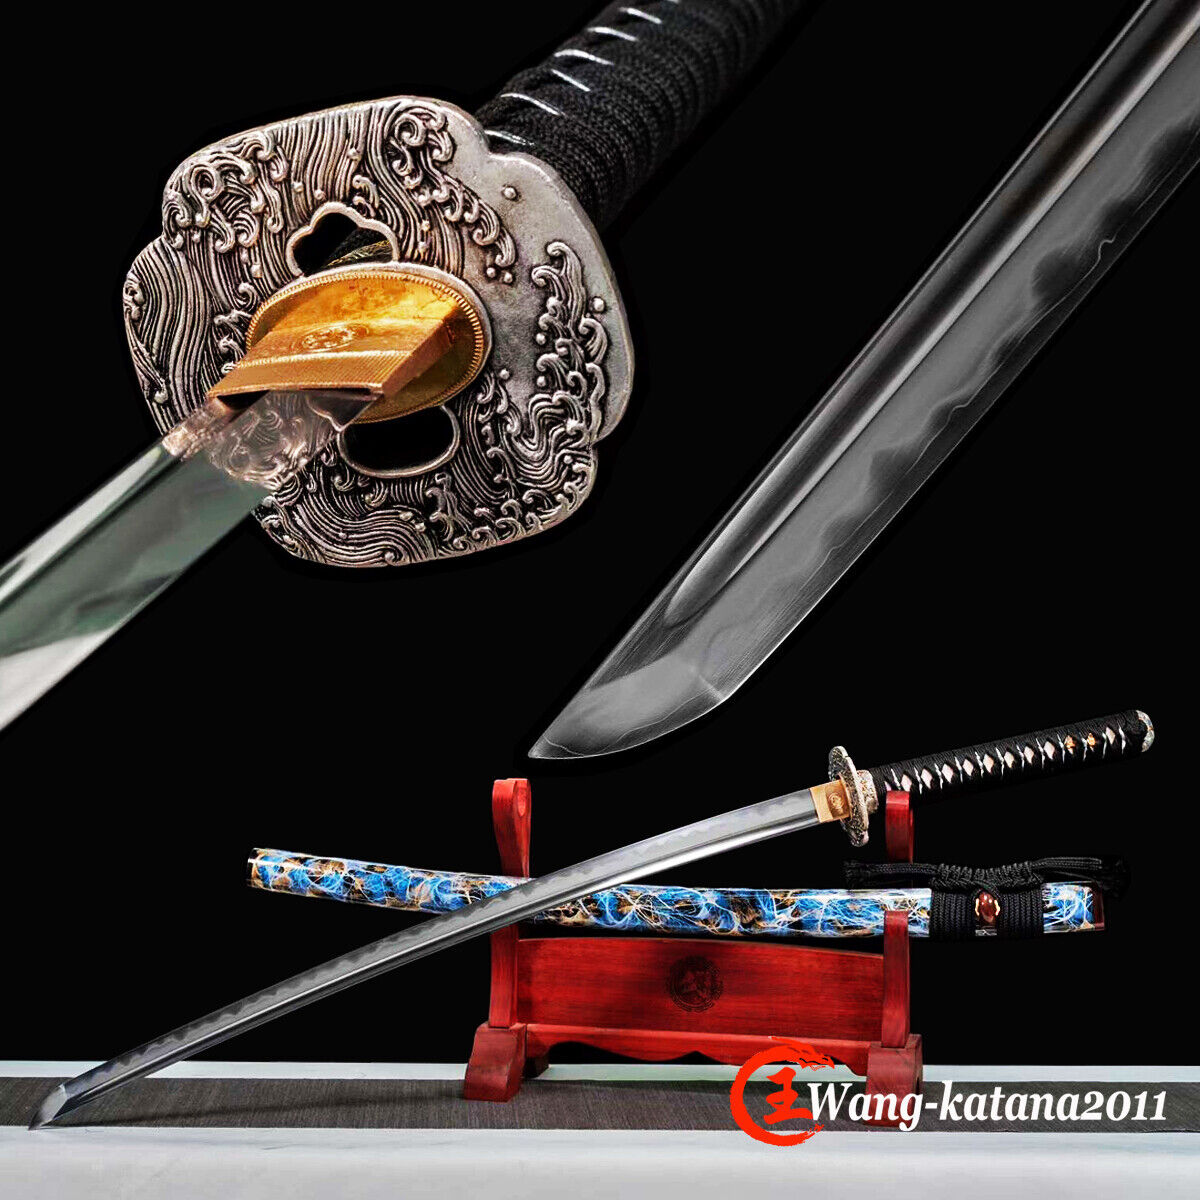 Handmade Honsanmai Japanese Samurai Katana Clay Temper Sharp Battle Ready Sword